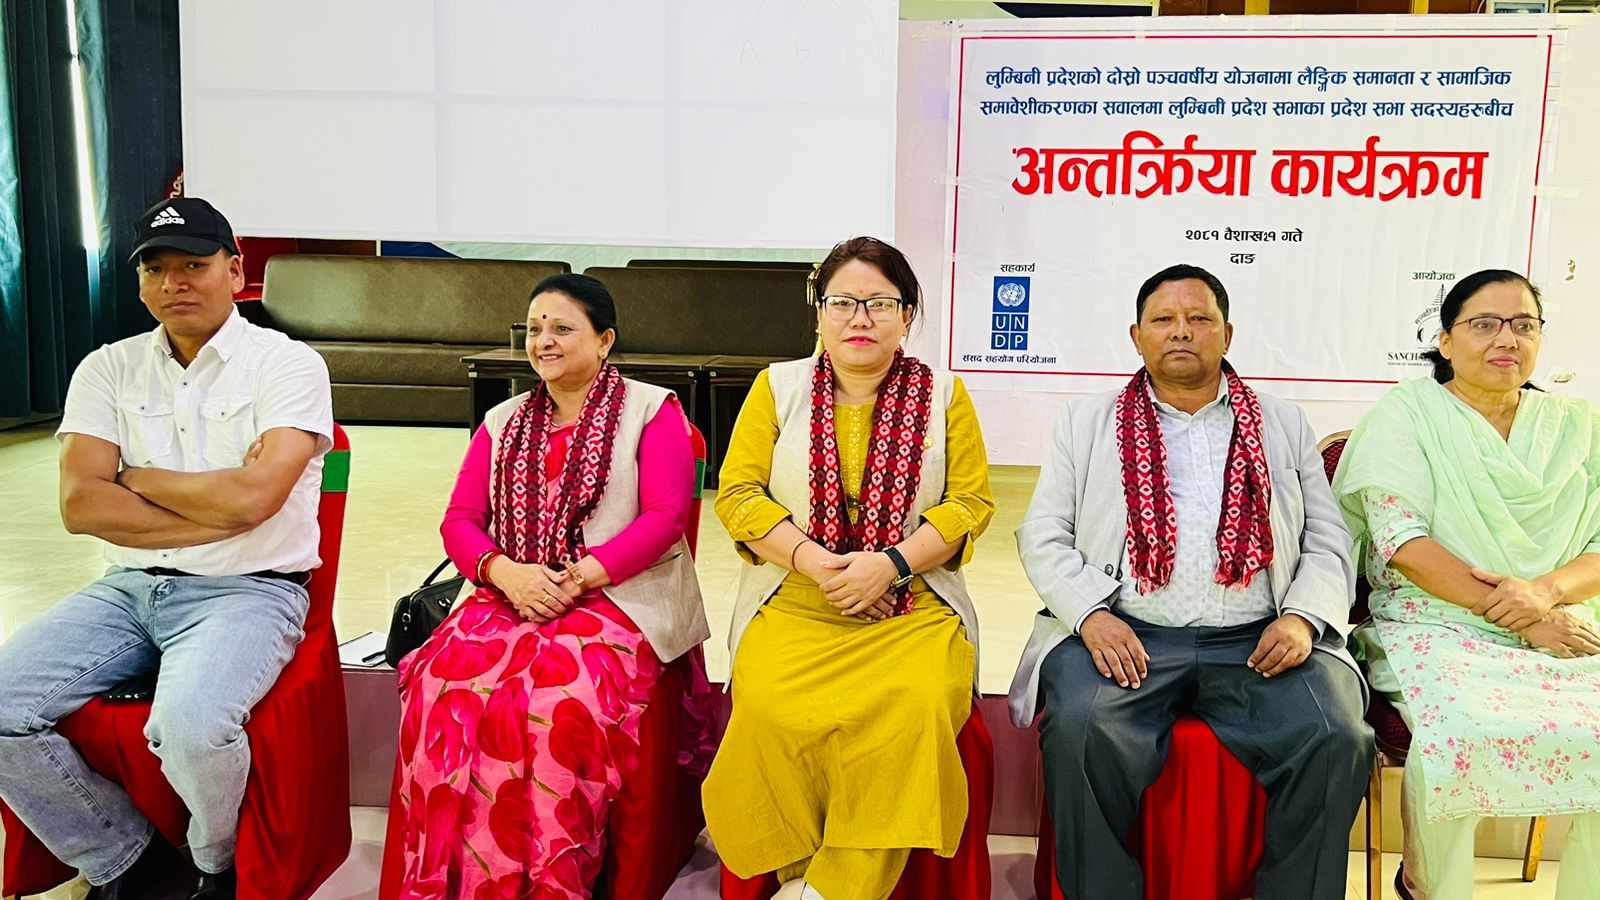 लुम्बिनीको आवधिक योजनामा लैंगिक समानता र समावेशीकरणको माग